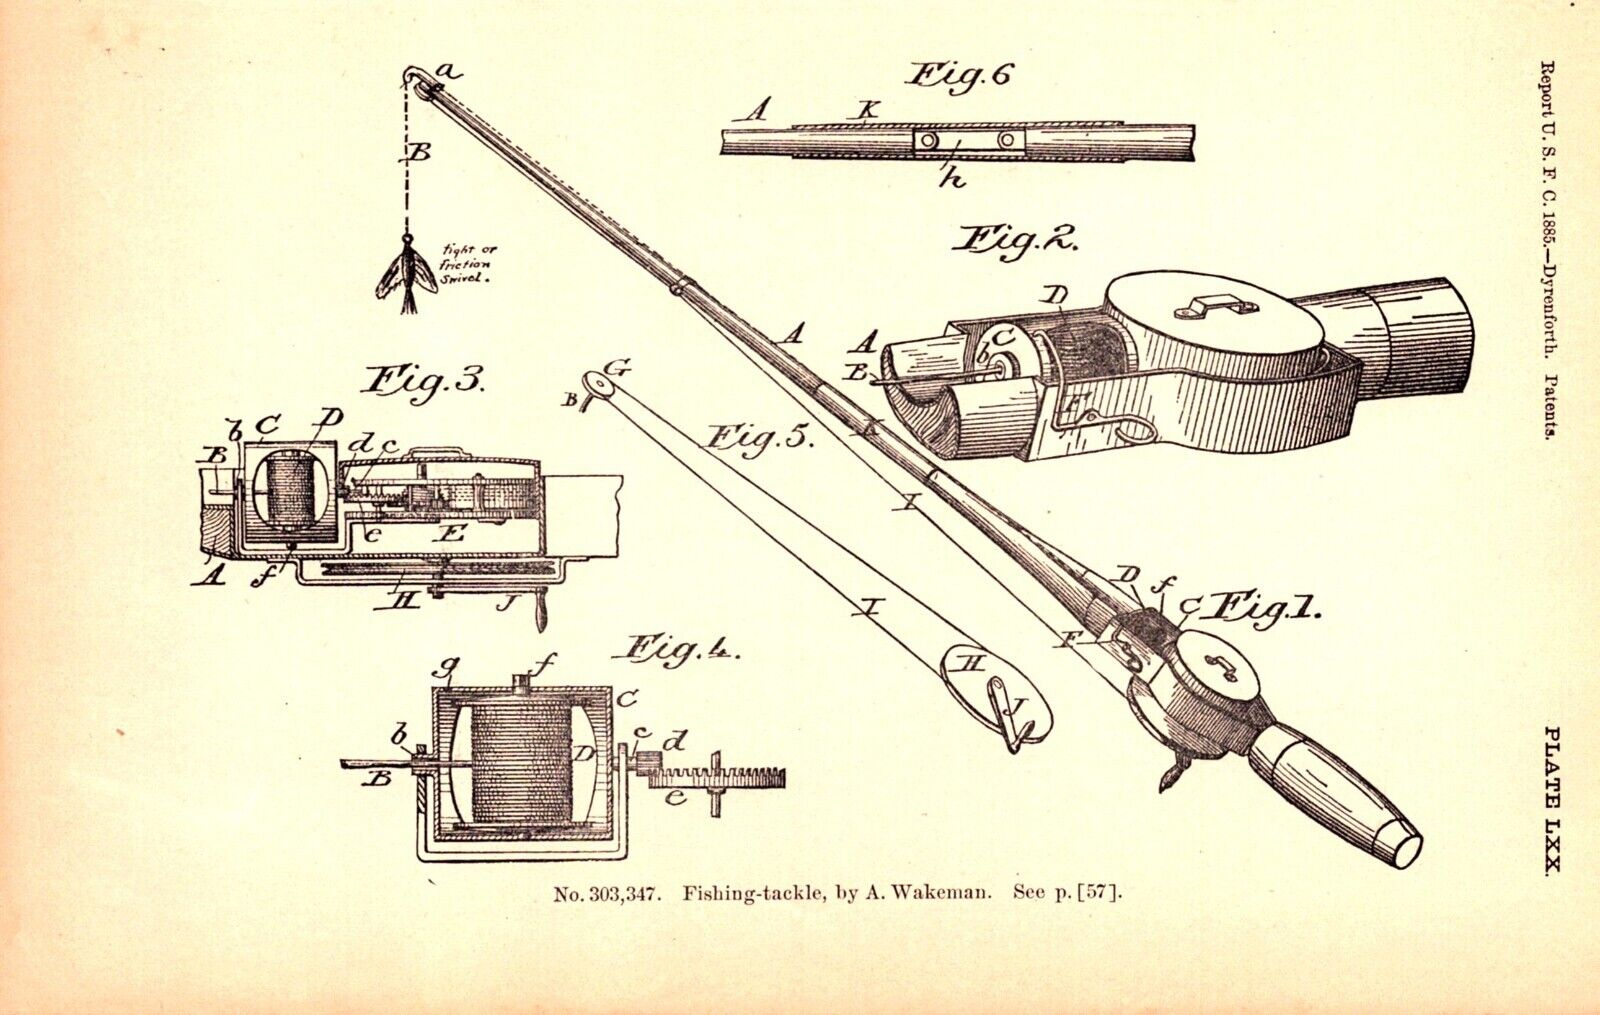 2 Prints, FISHING-TACKLE, FISHING REEL Antique Original Patent engraving 1887